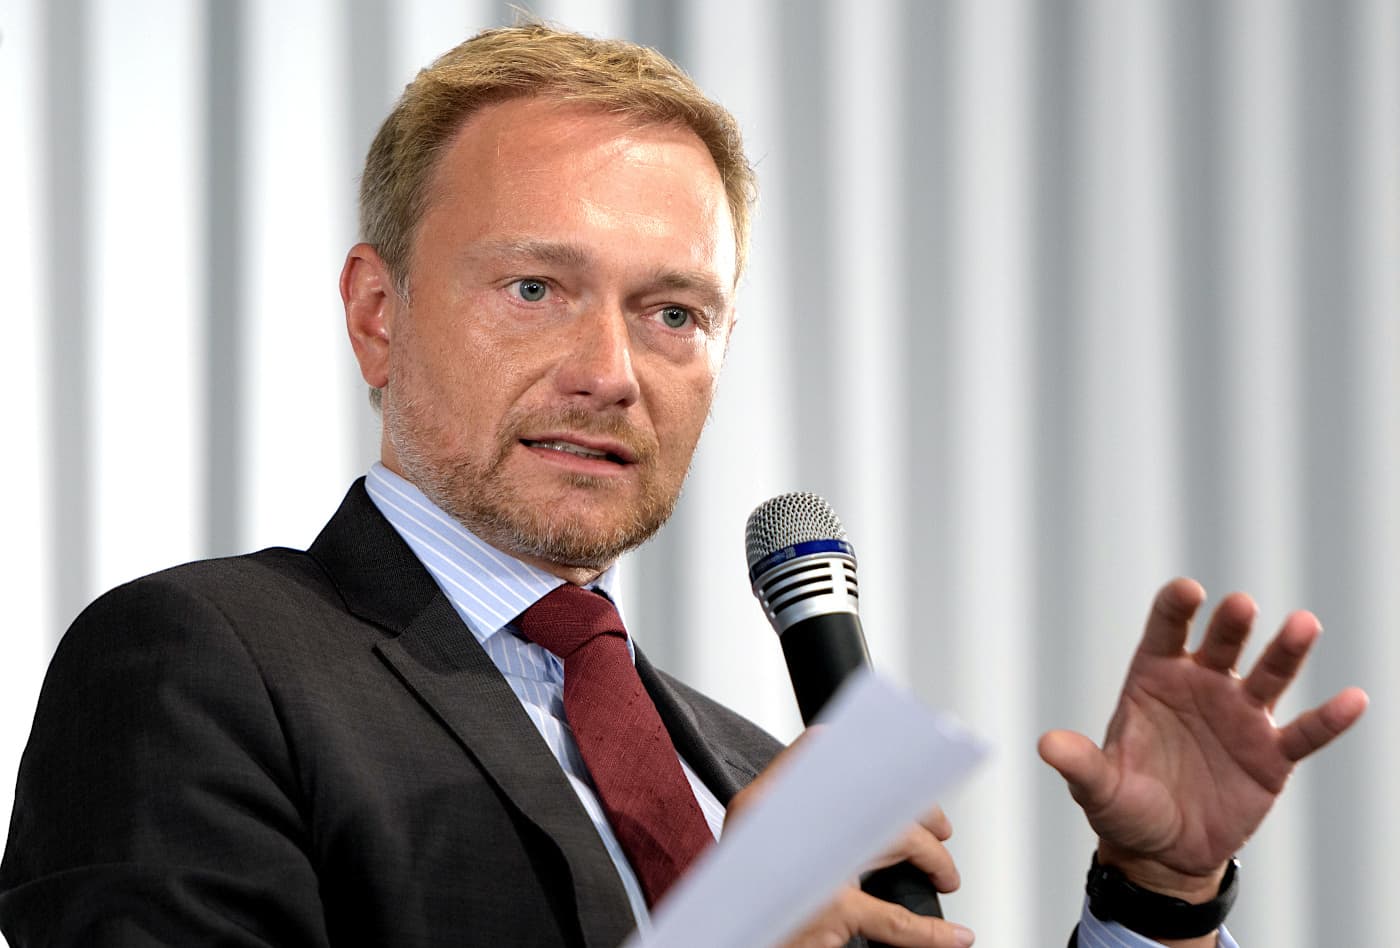 Spitzenkandidat der FDP bei der Bundestagswahl 2021 - Christian Lindner